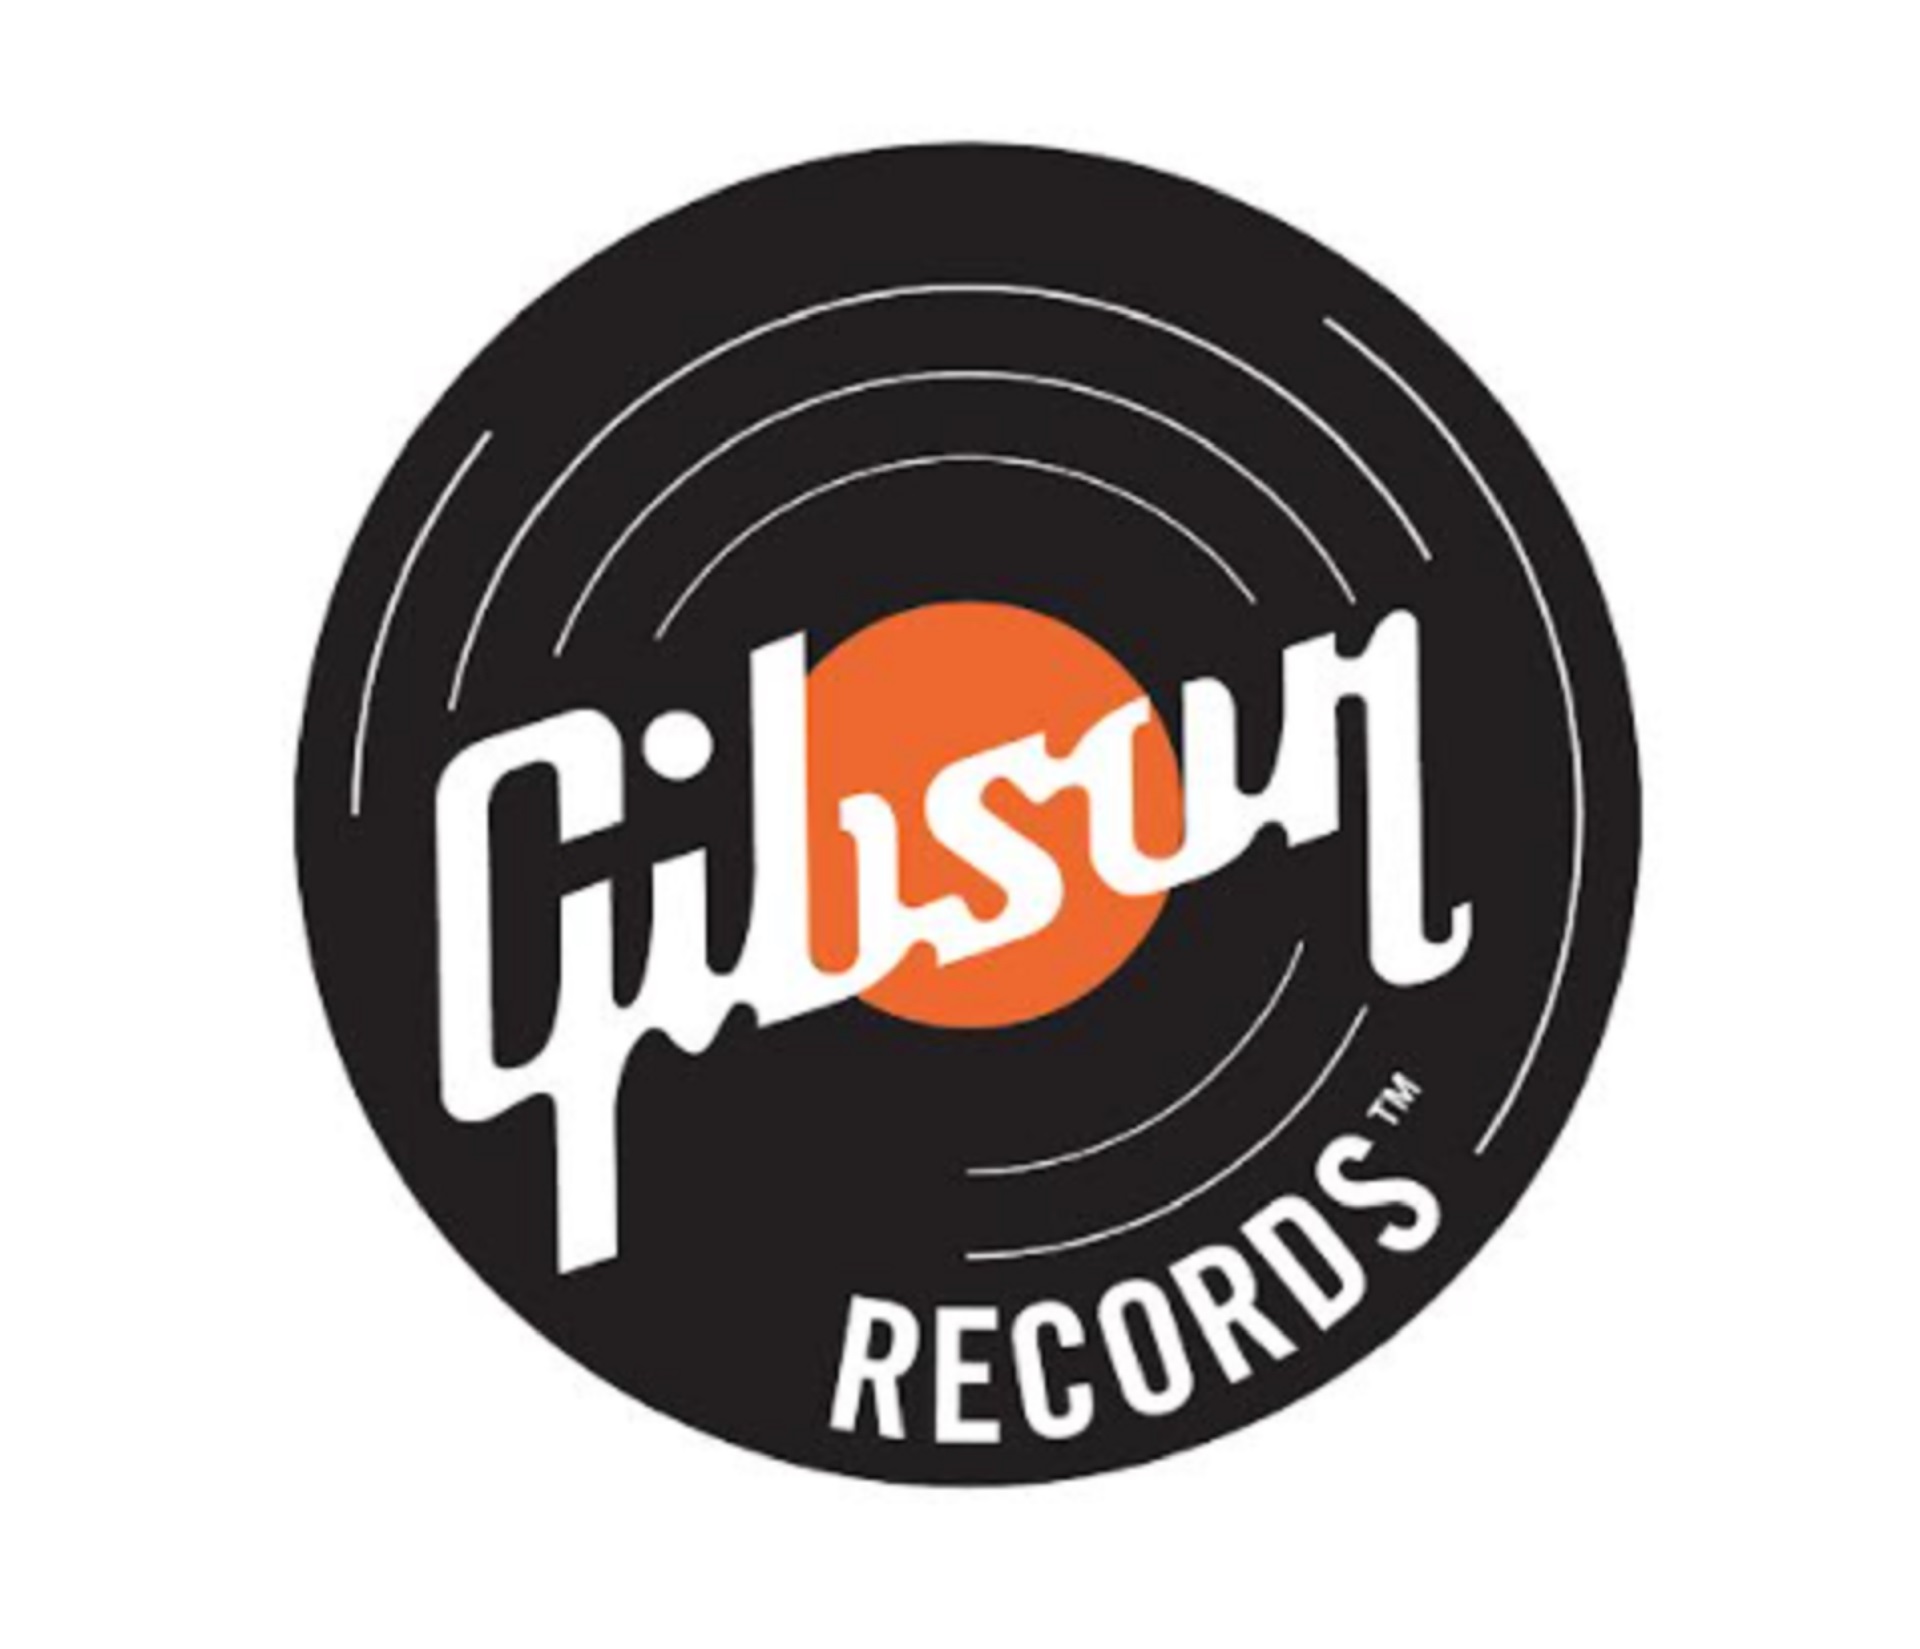 Gibson sigue apostando y acaba de anunciar su sociedad con BMG para el lanzamiento de un sello discográfico en conjunto